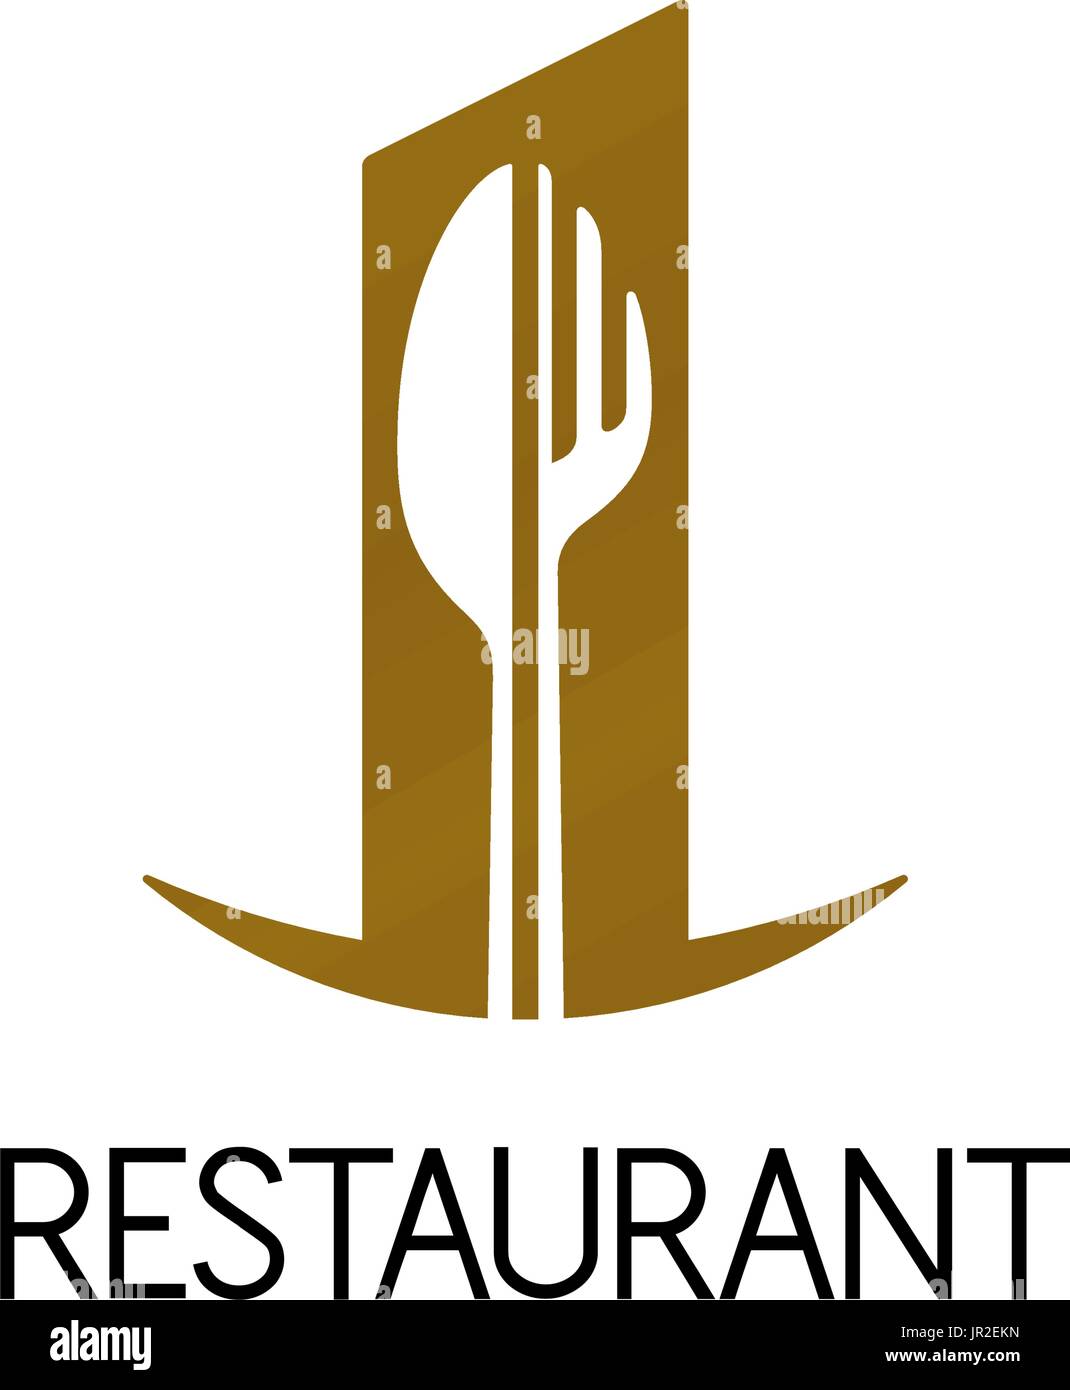 Design of restaurant logo on white background. Fork and knife shape. Isolated vector illustration. Stock Vector